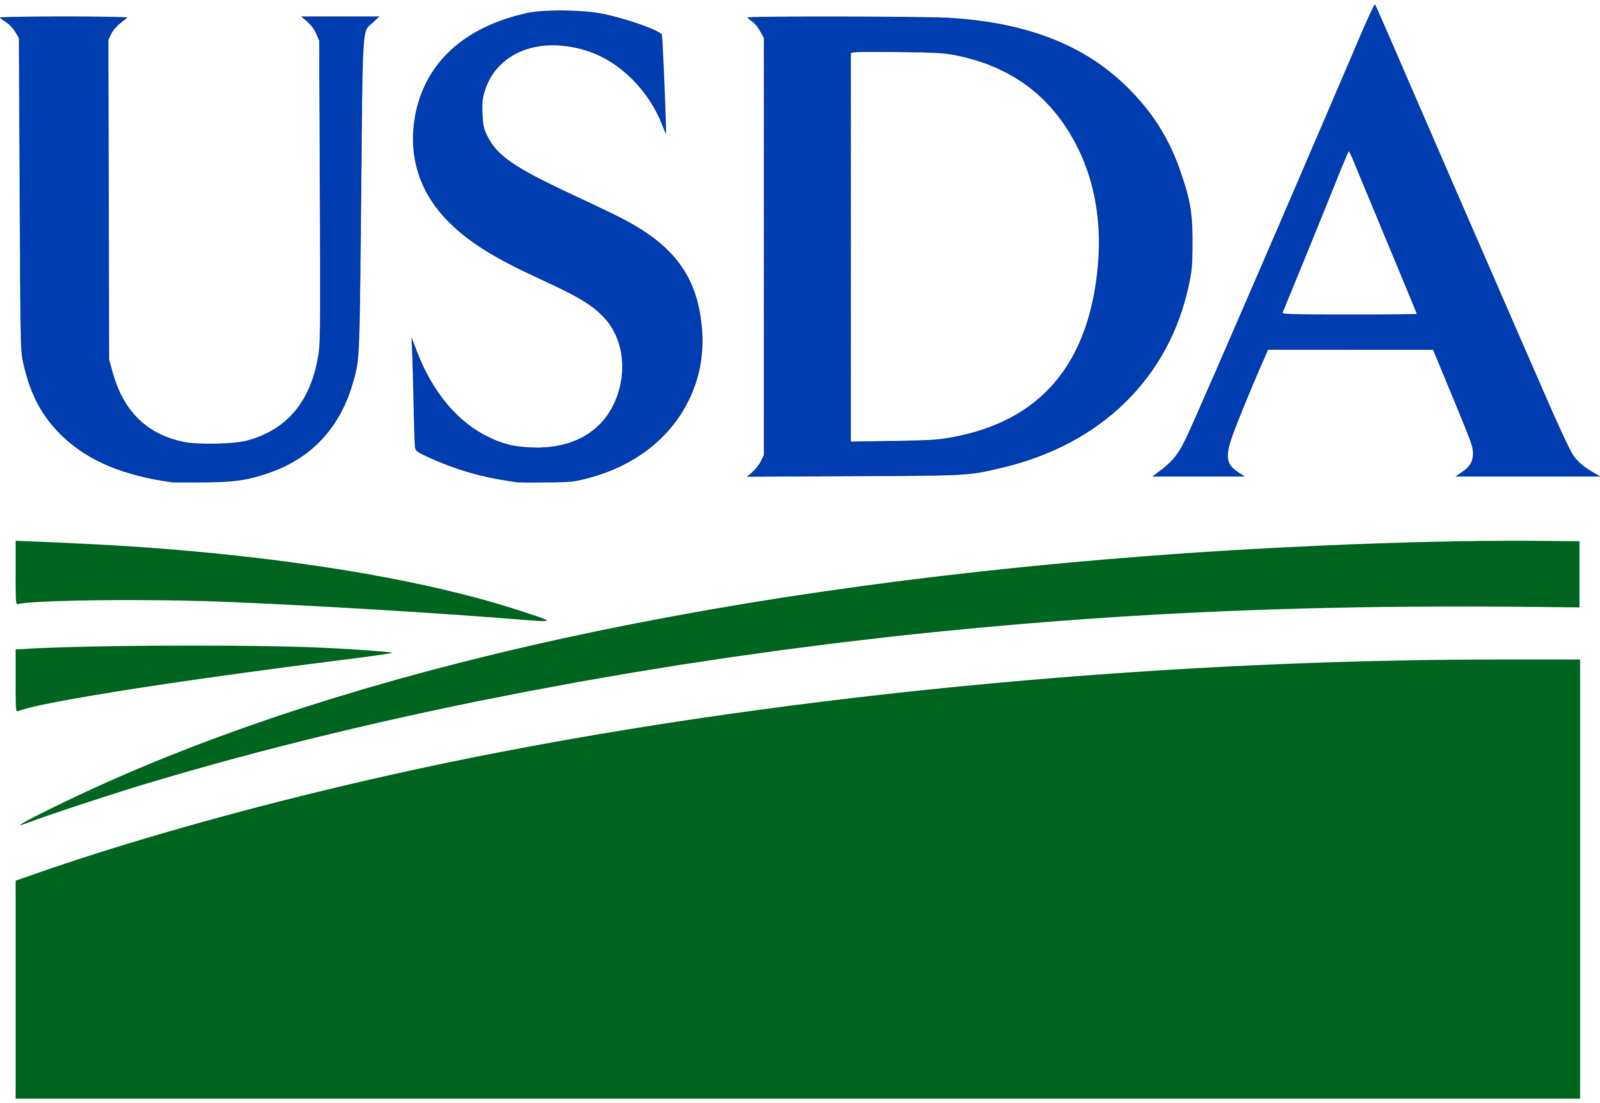 Usda Logo